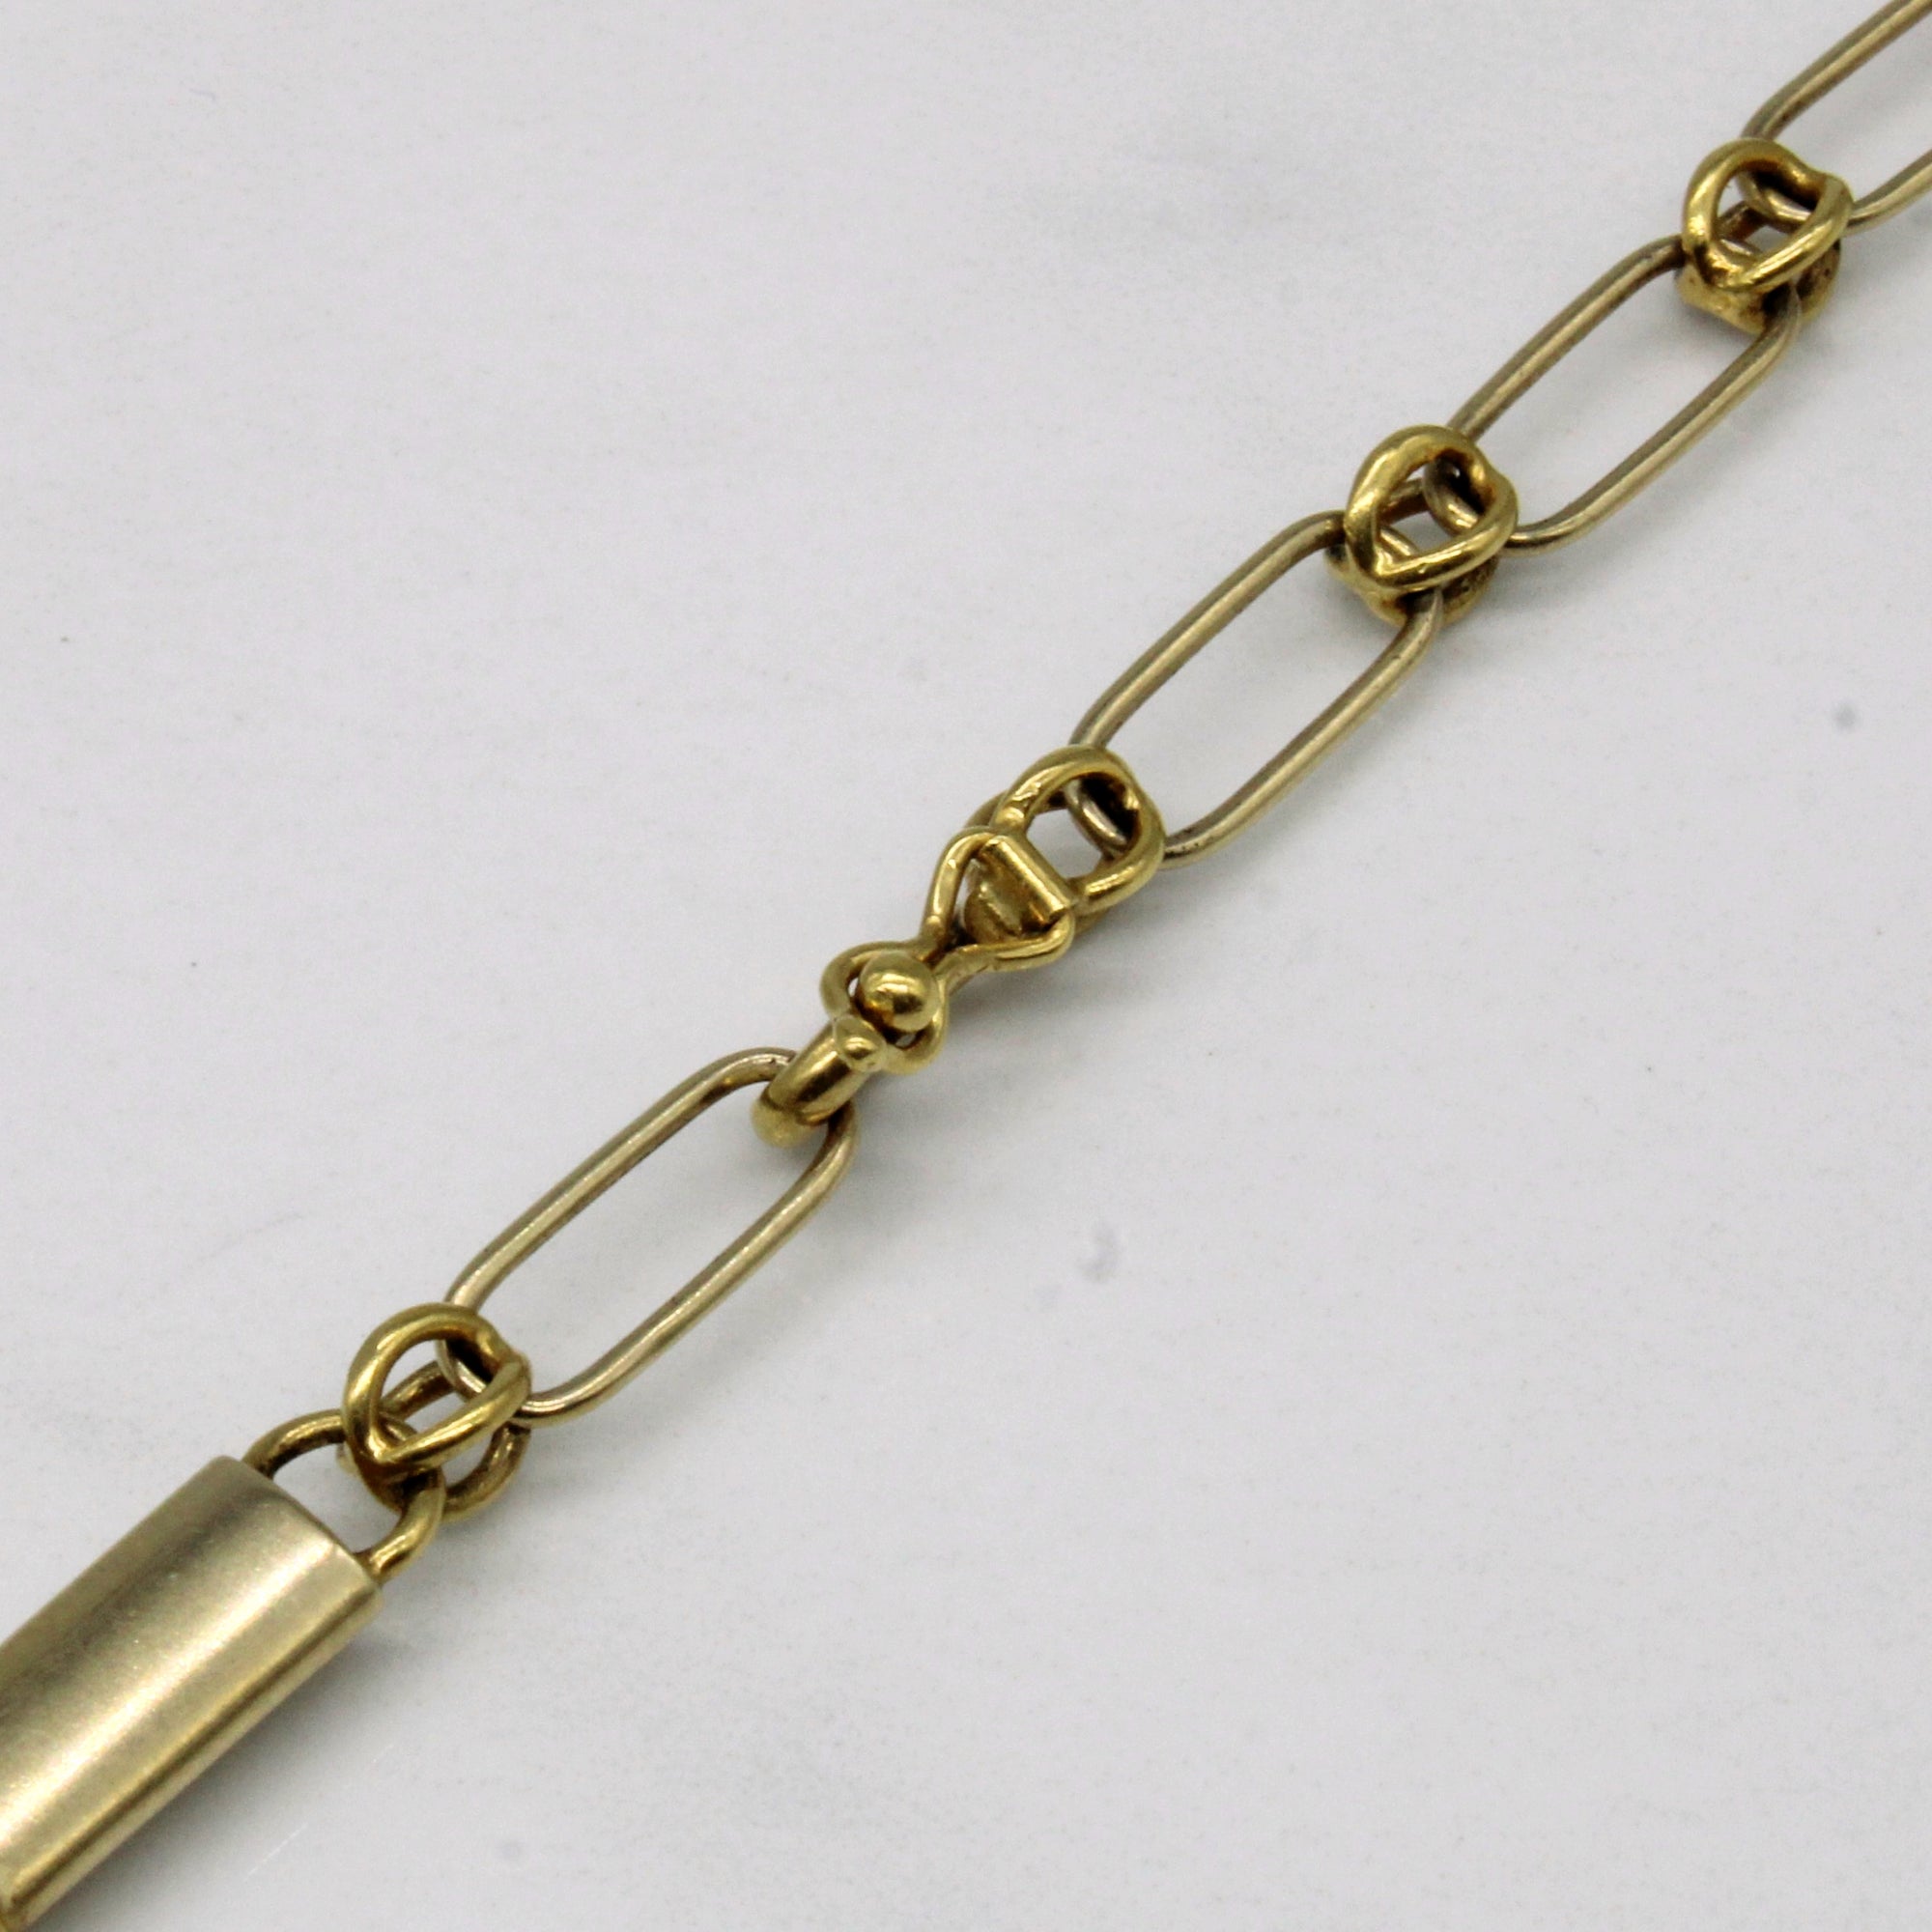 18k Yellow Gold Unique Link Necklace | 24